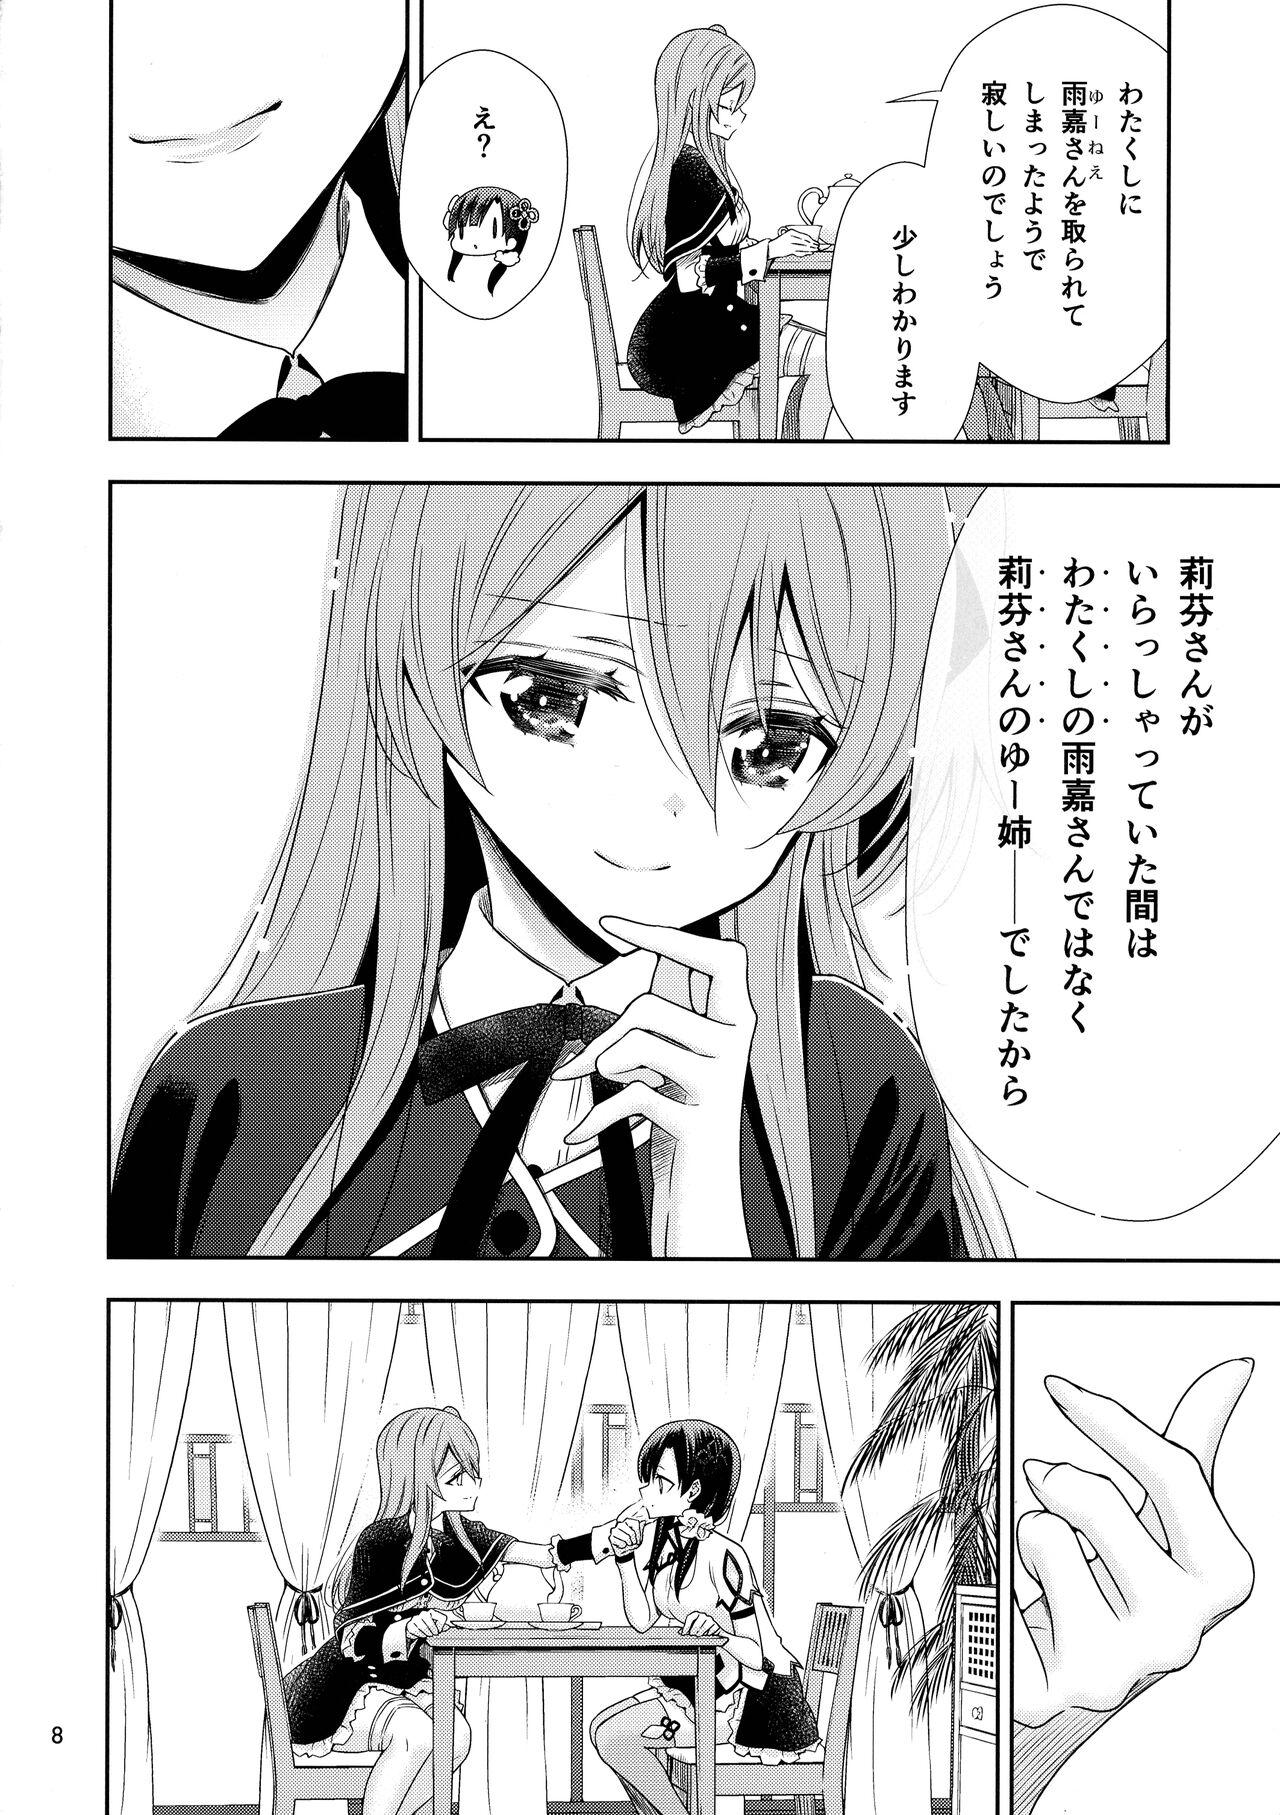 Loira Kami Rin ga ame Yoshimi ni Yaki Mochi o Yaku Hanashi - Assault lily Facebook - Page 8